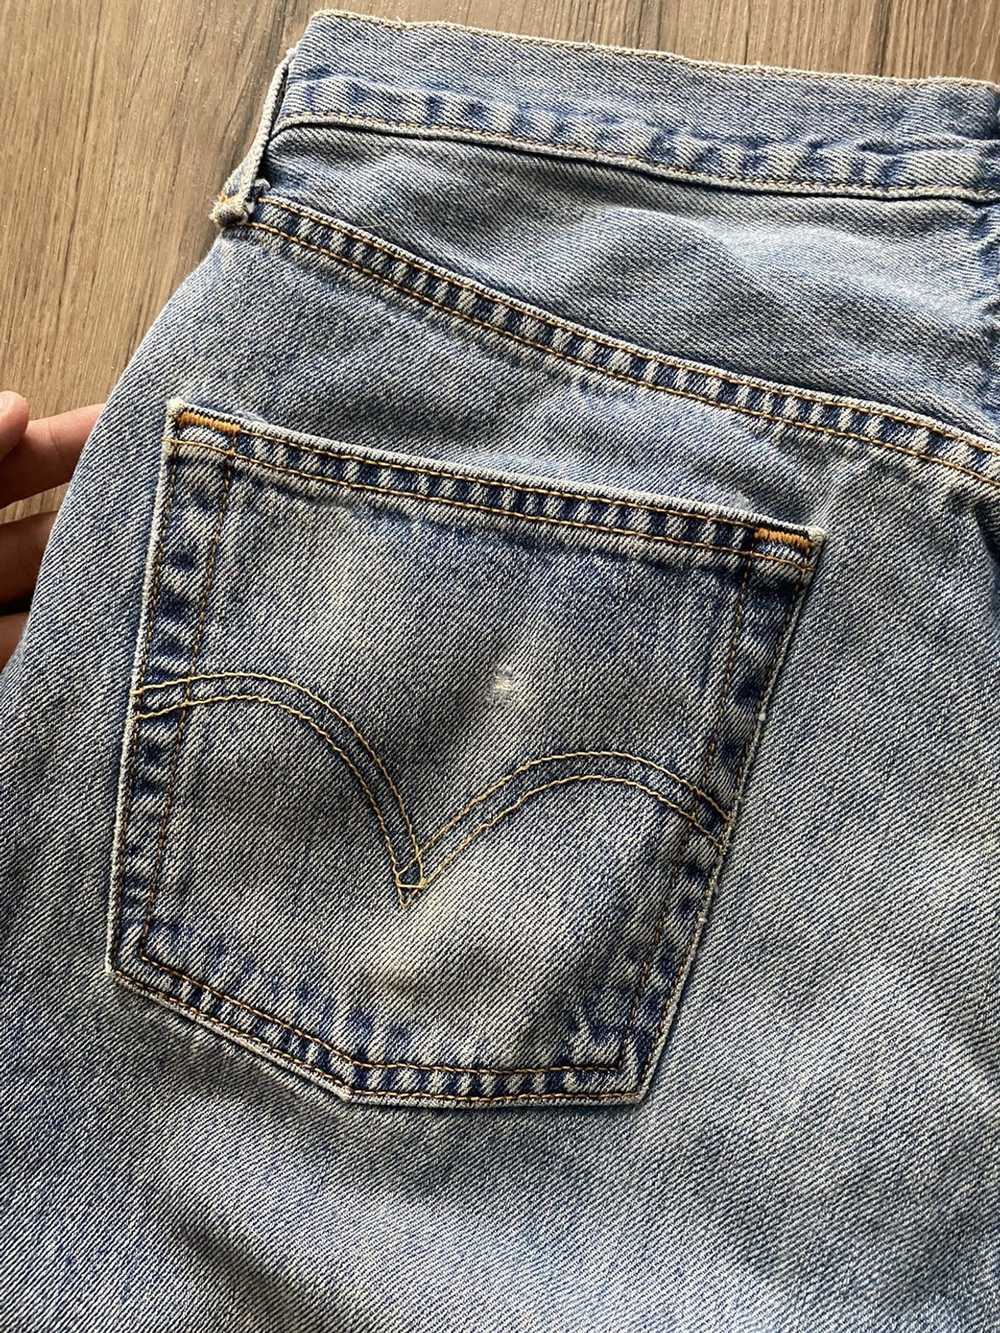 Levi's levi’s jeans - image 3